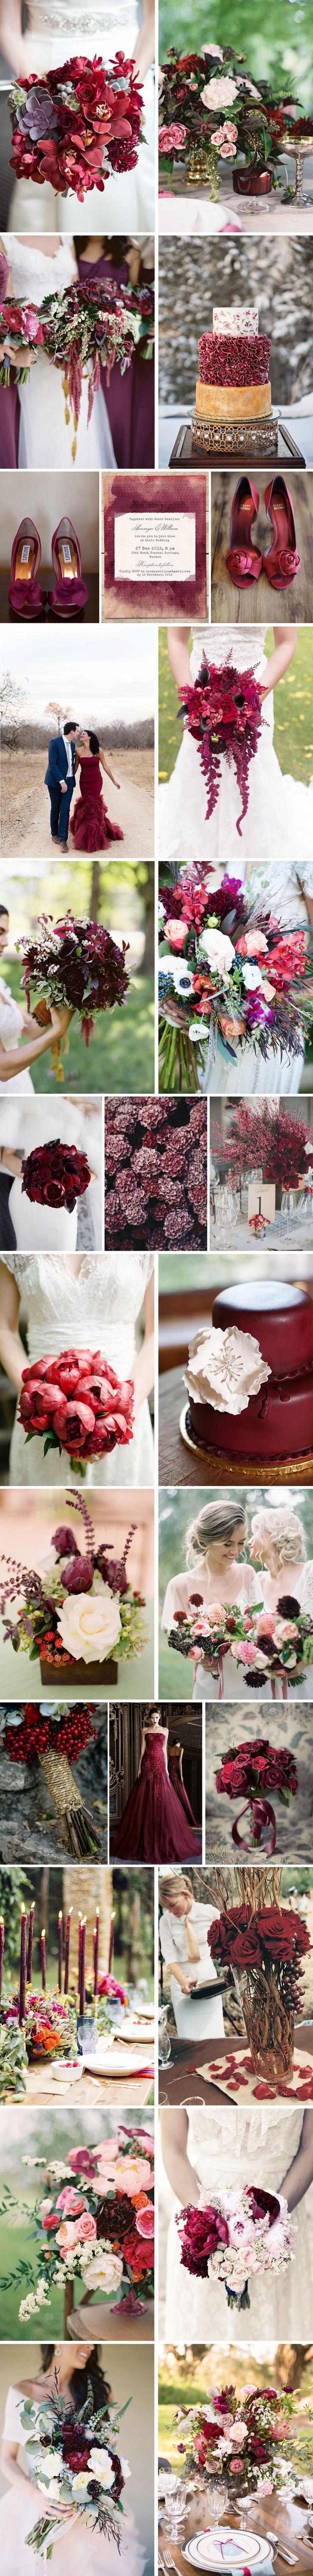 Wedding - Burgundy Wedding Theme Ideas